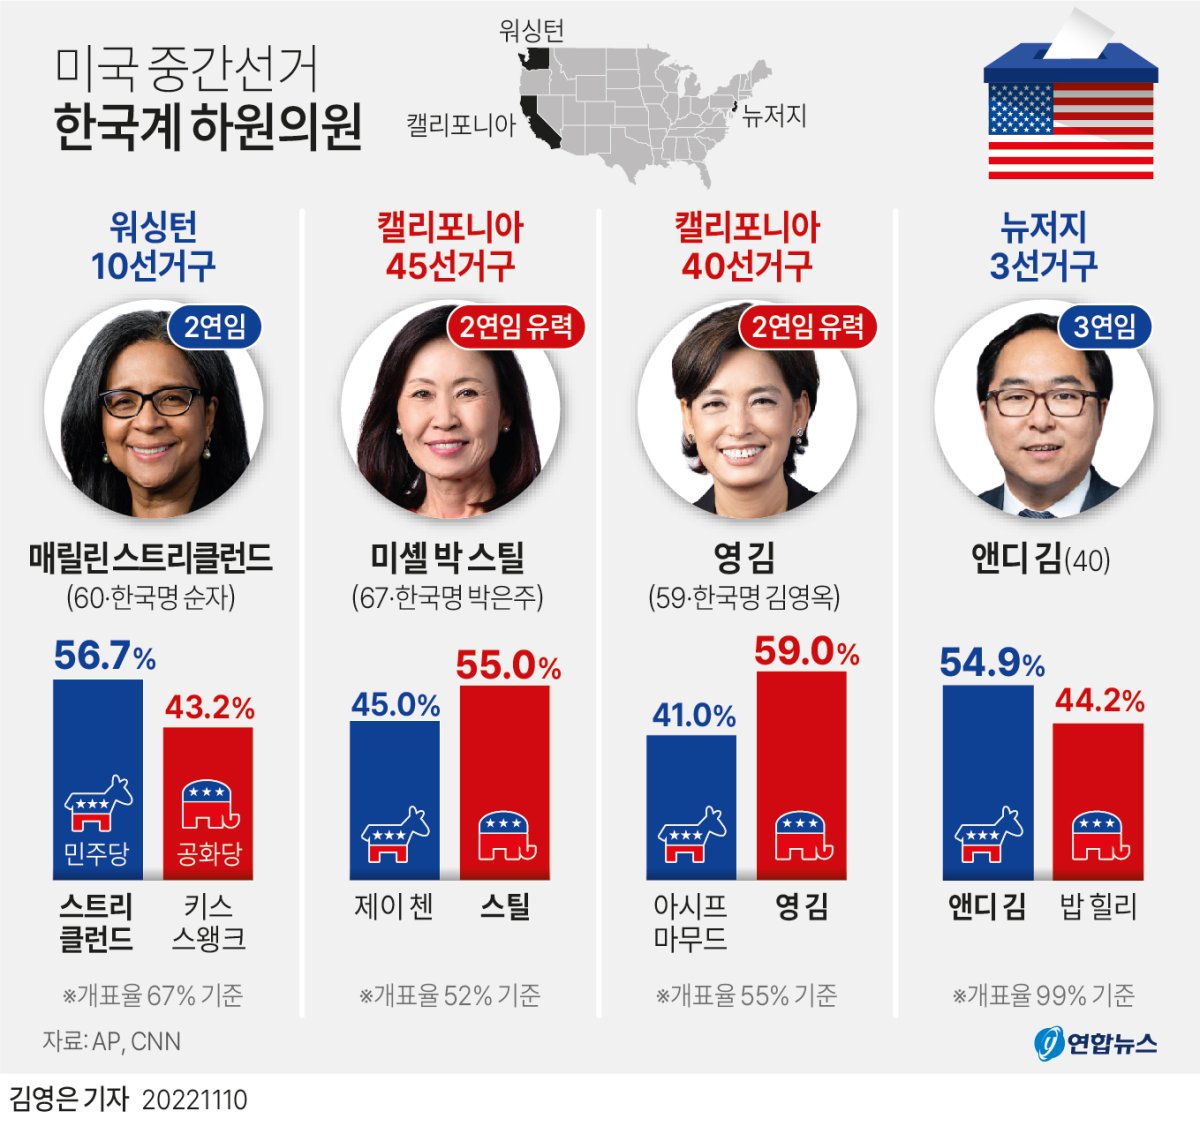  미국 중간선거 한국계 하원의원